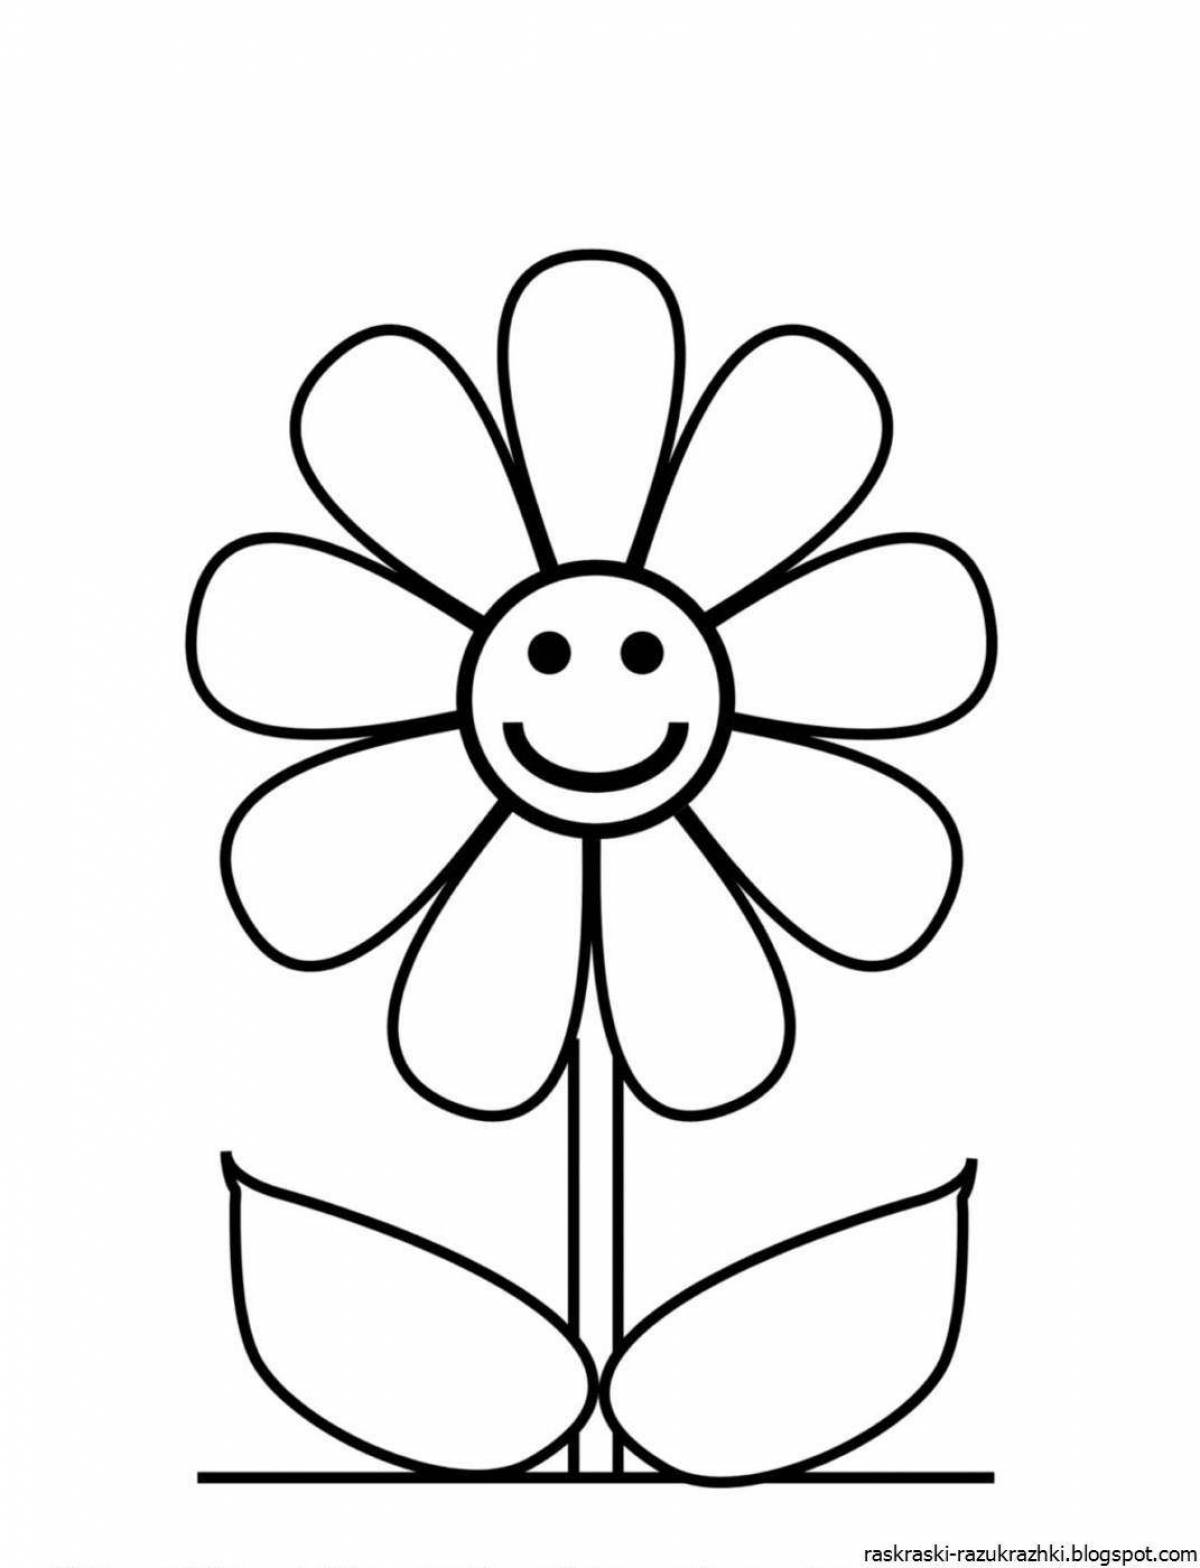 Изысканная раскраска цветок семицветик для детей 3-4 лет